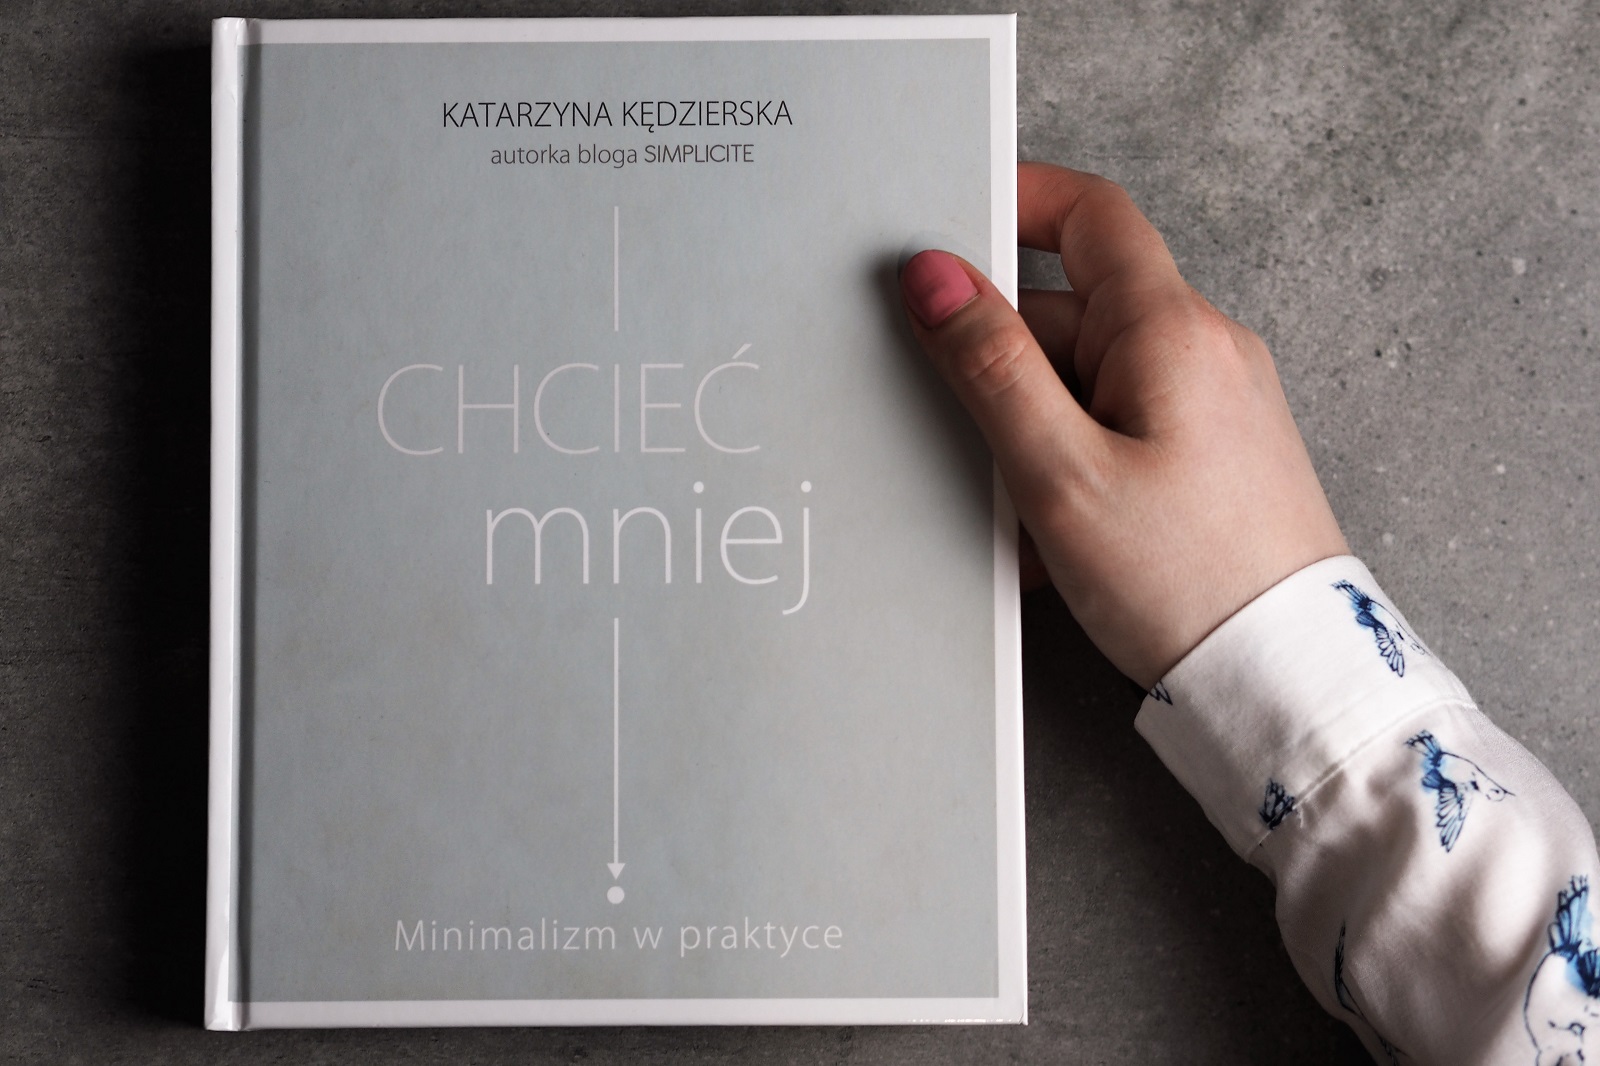 Minimalizam w praktyce – książka  Katarzyny Kędzierskiej autorki bloga Simplicity